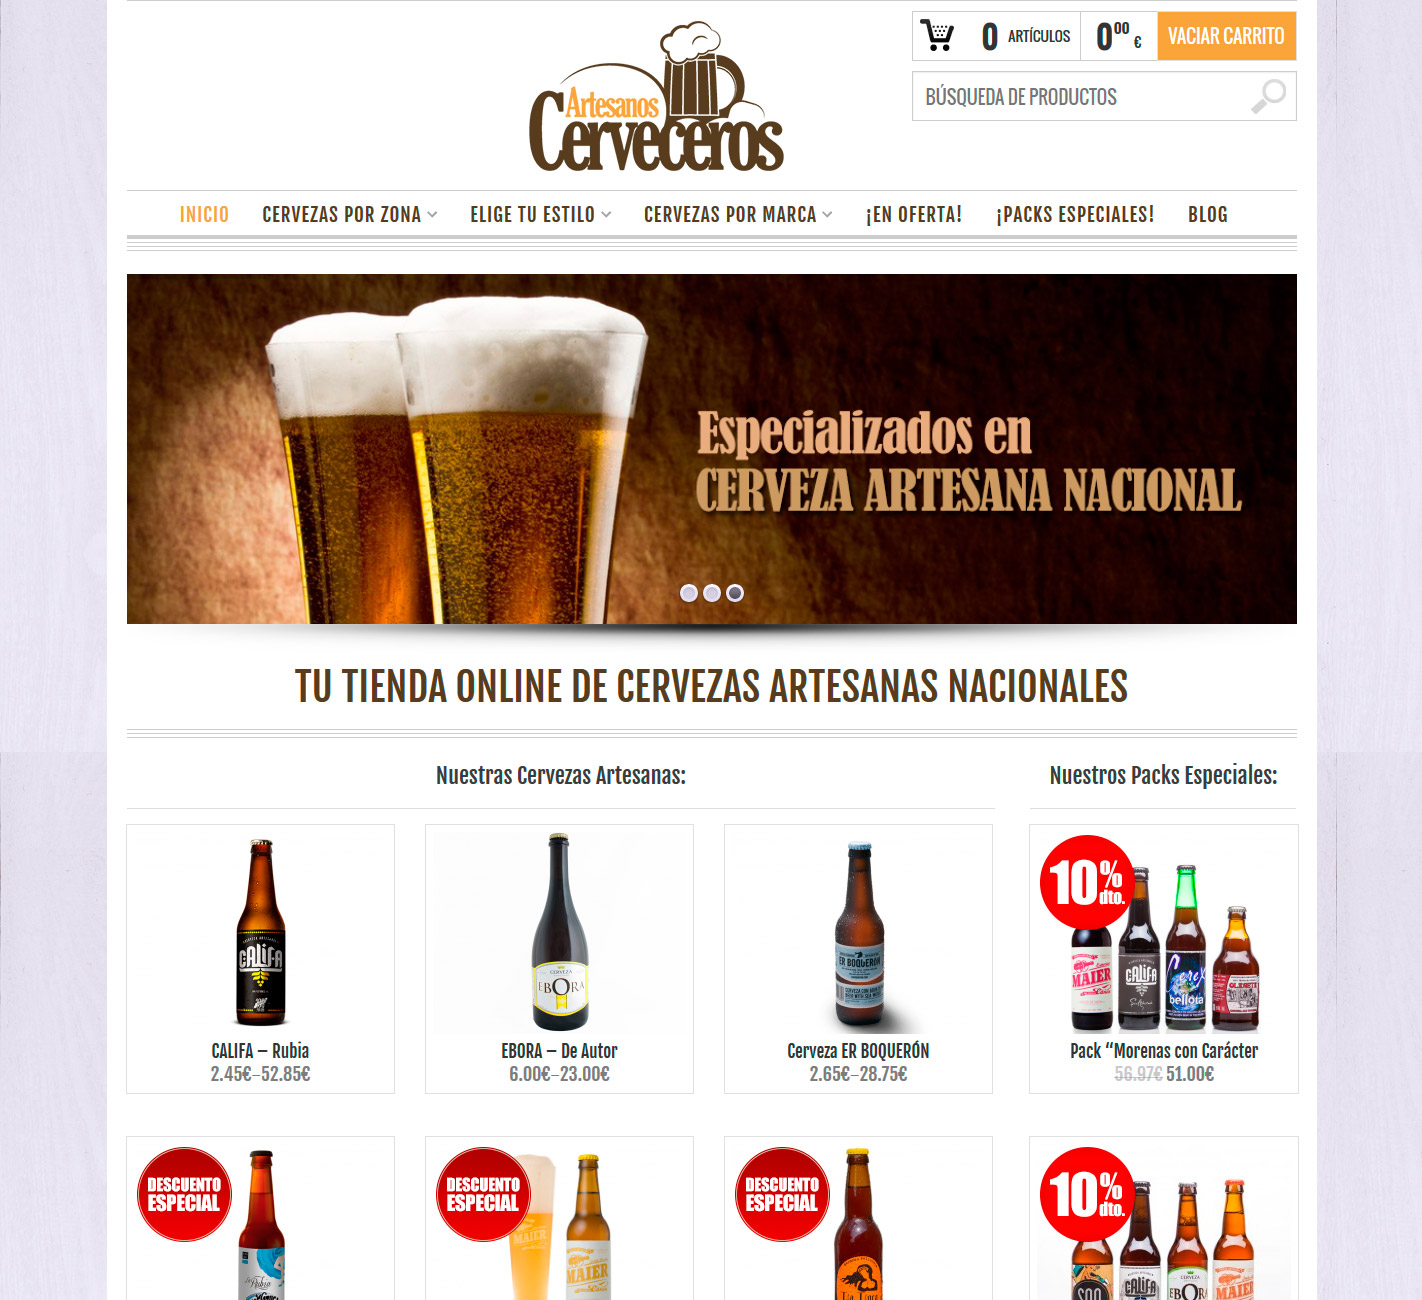 Cervezas artesanas nacionales a un solo clic